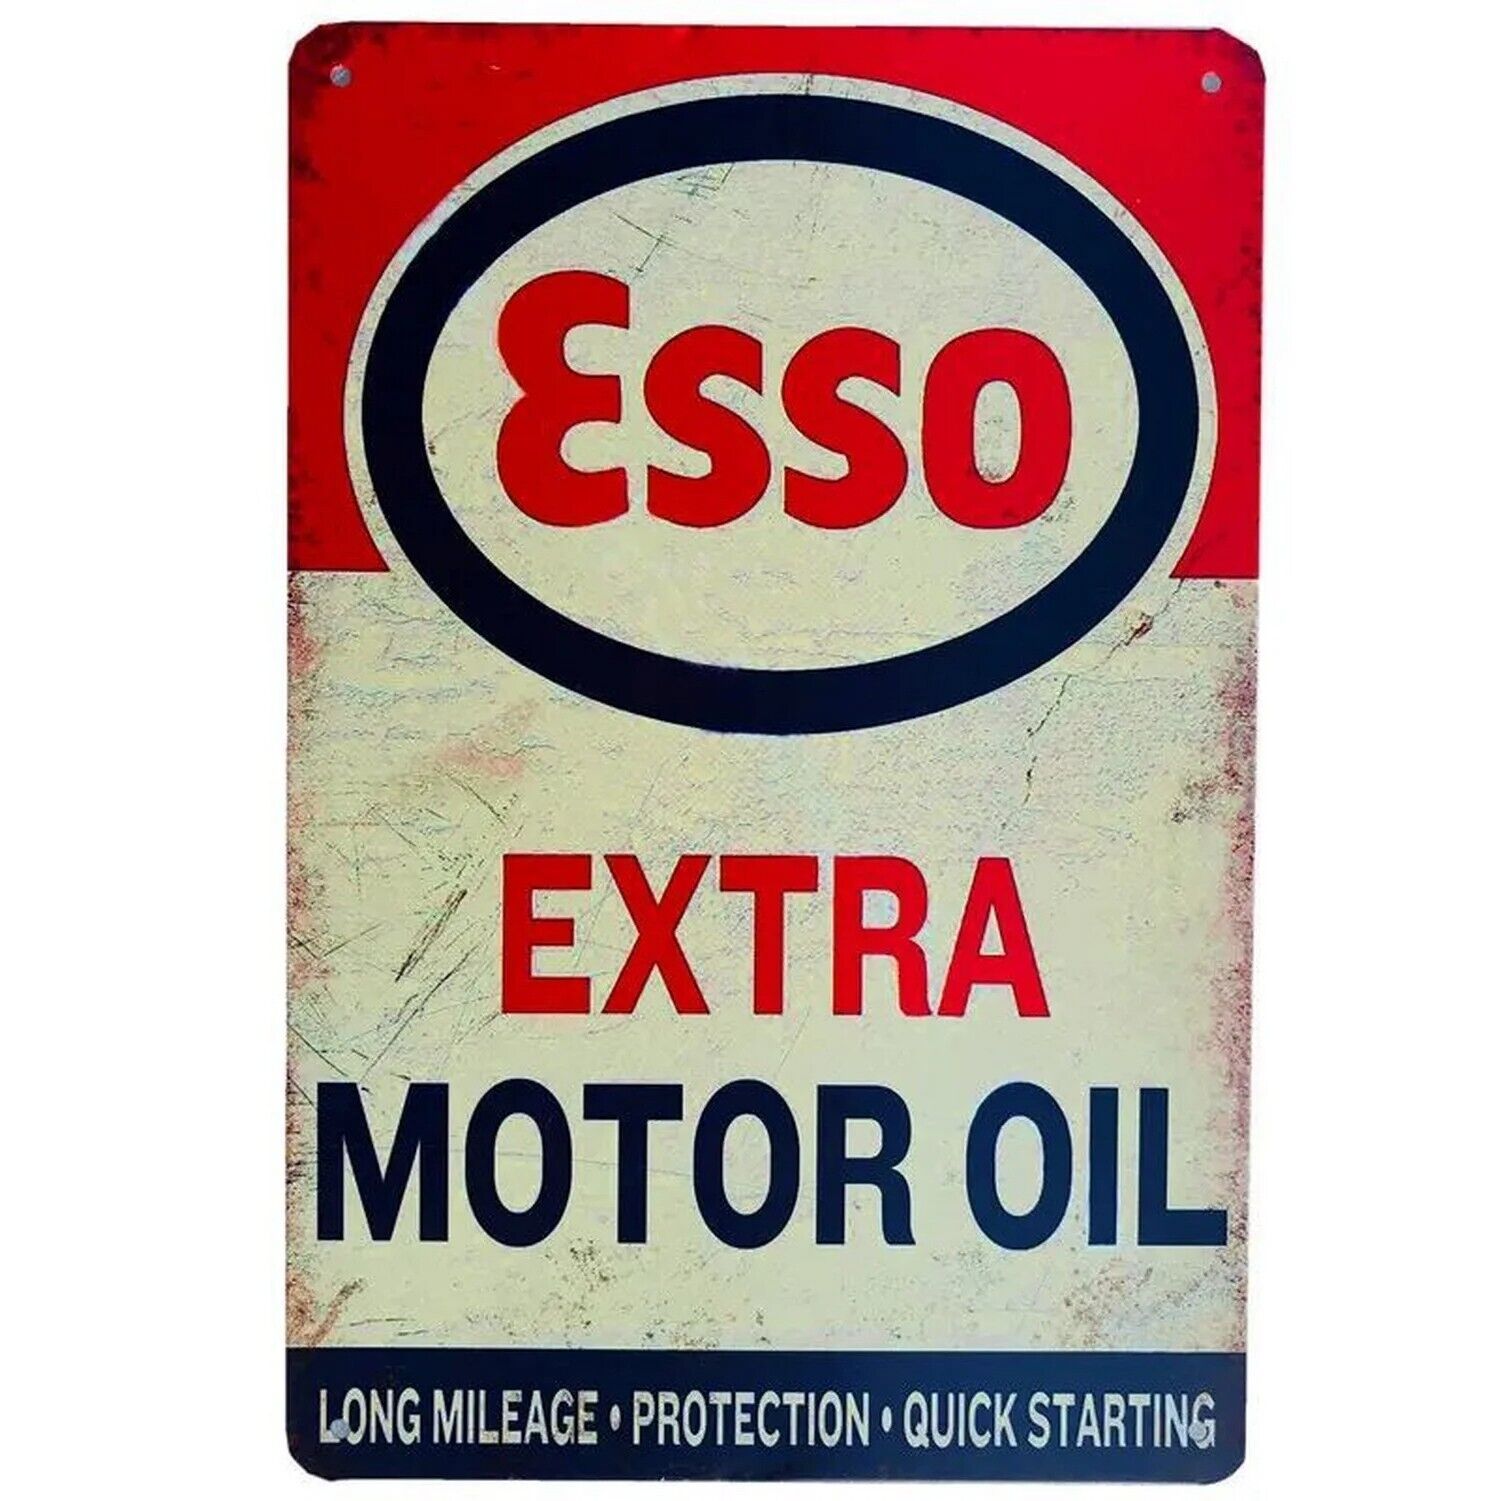 Esso Extra Motor Oil Vintage Novelty Metal Sign 5.5